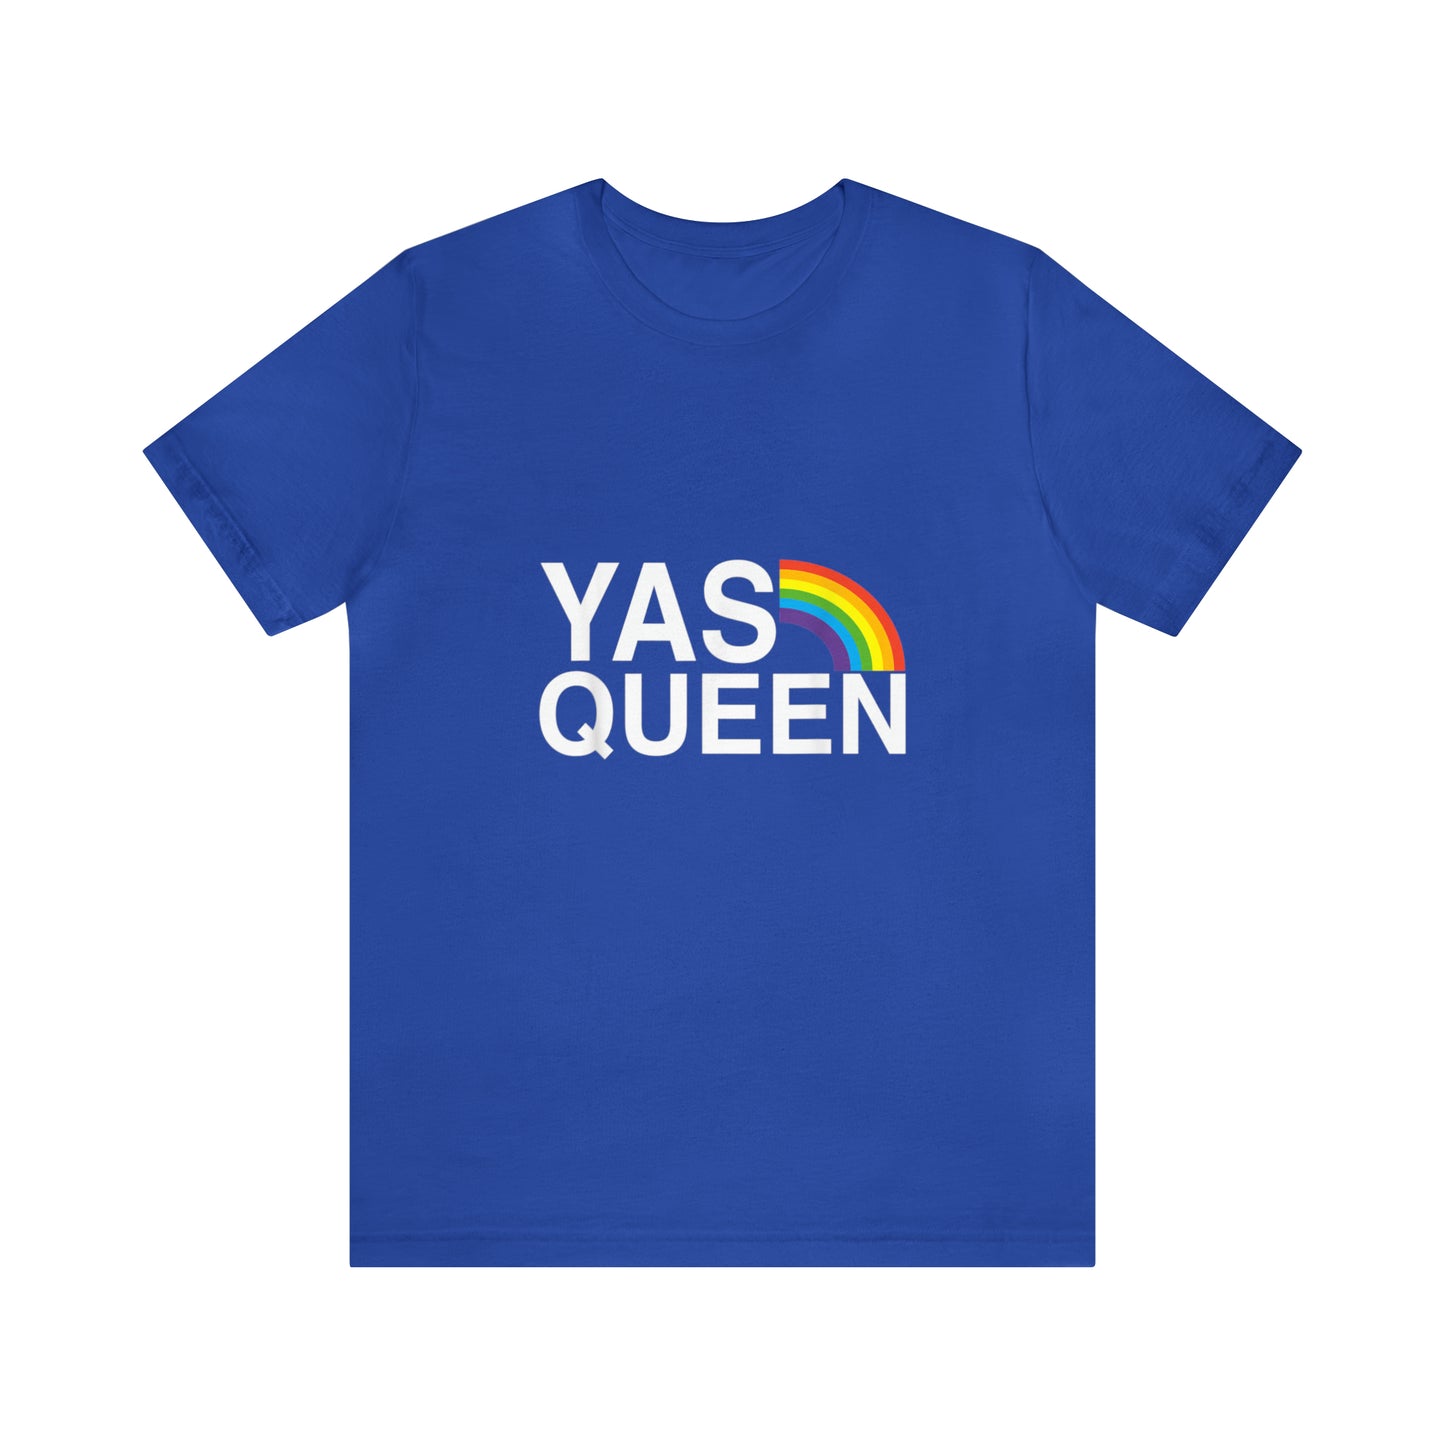 Yas Queen - Unisex T-Shirt